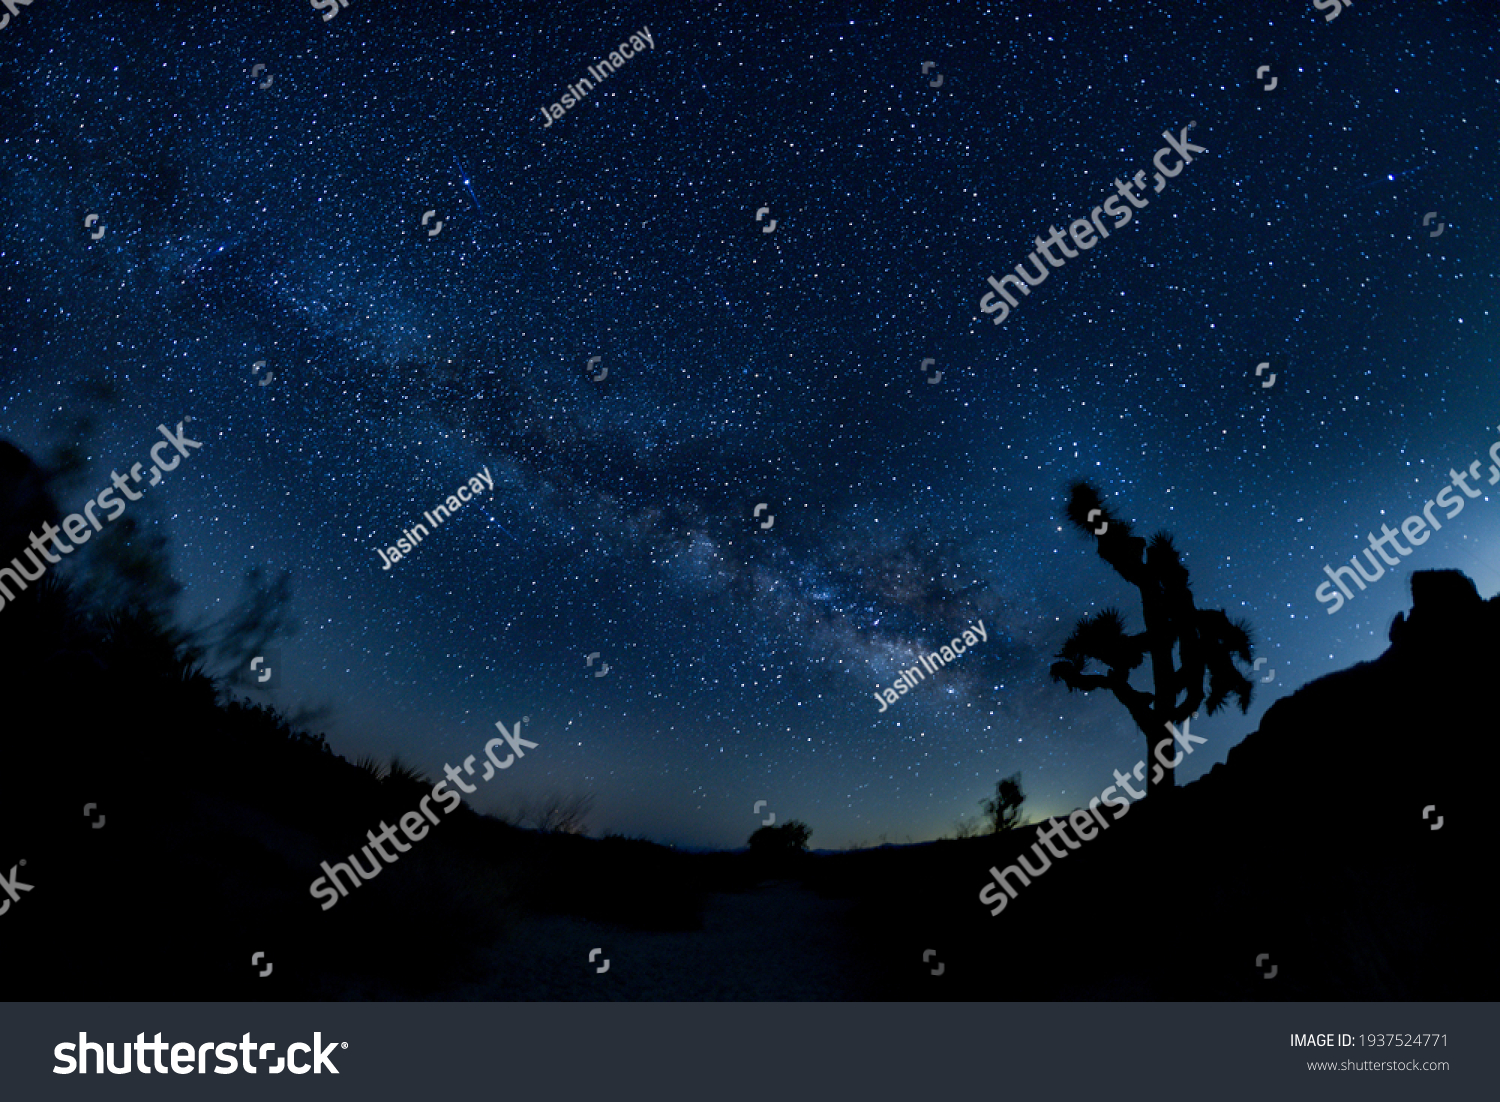 Sternhimmel Bilder Stockfotos Und Vektorgrafiken Shutterstock